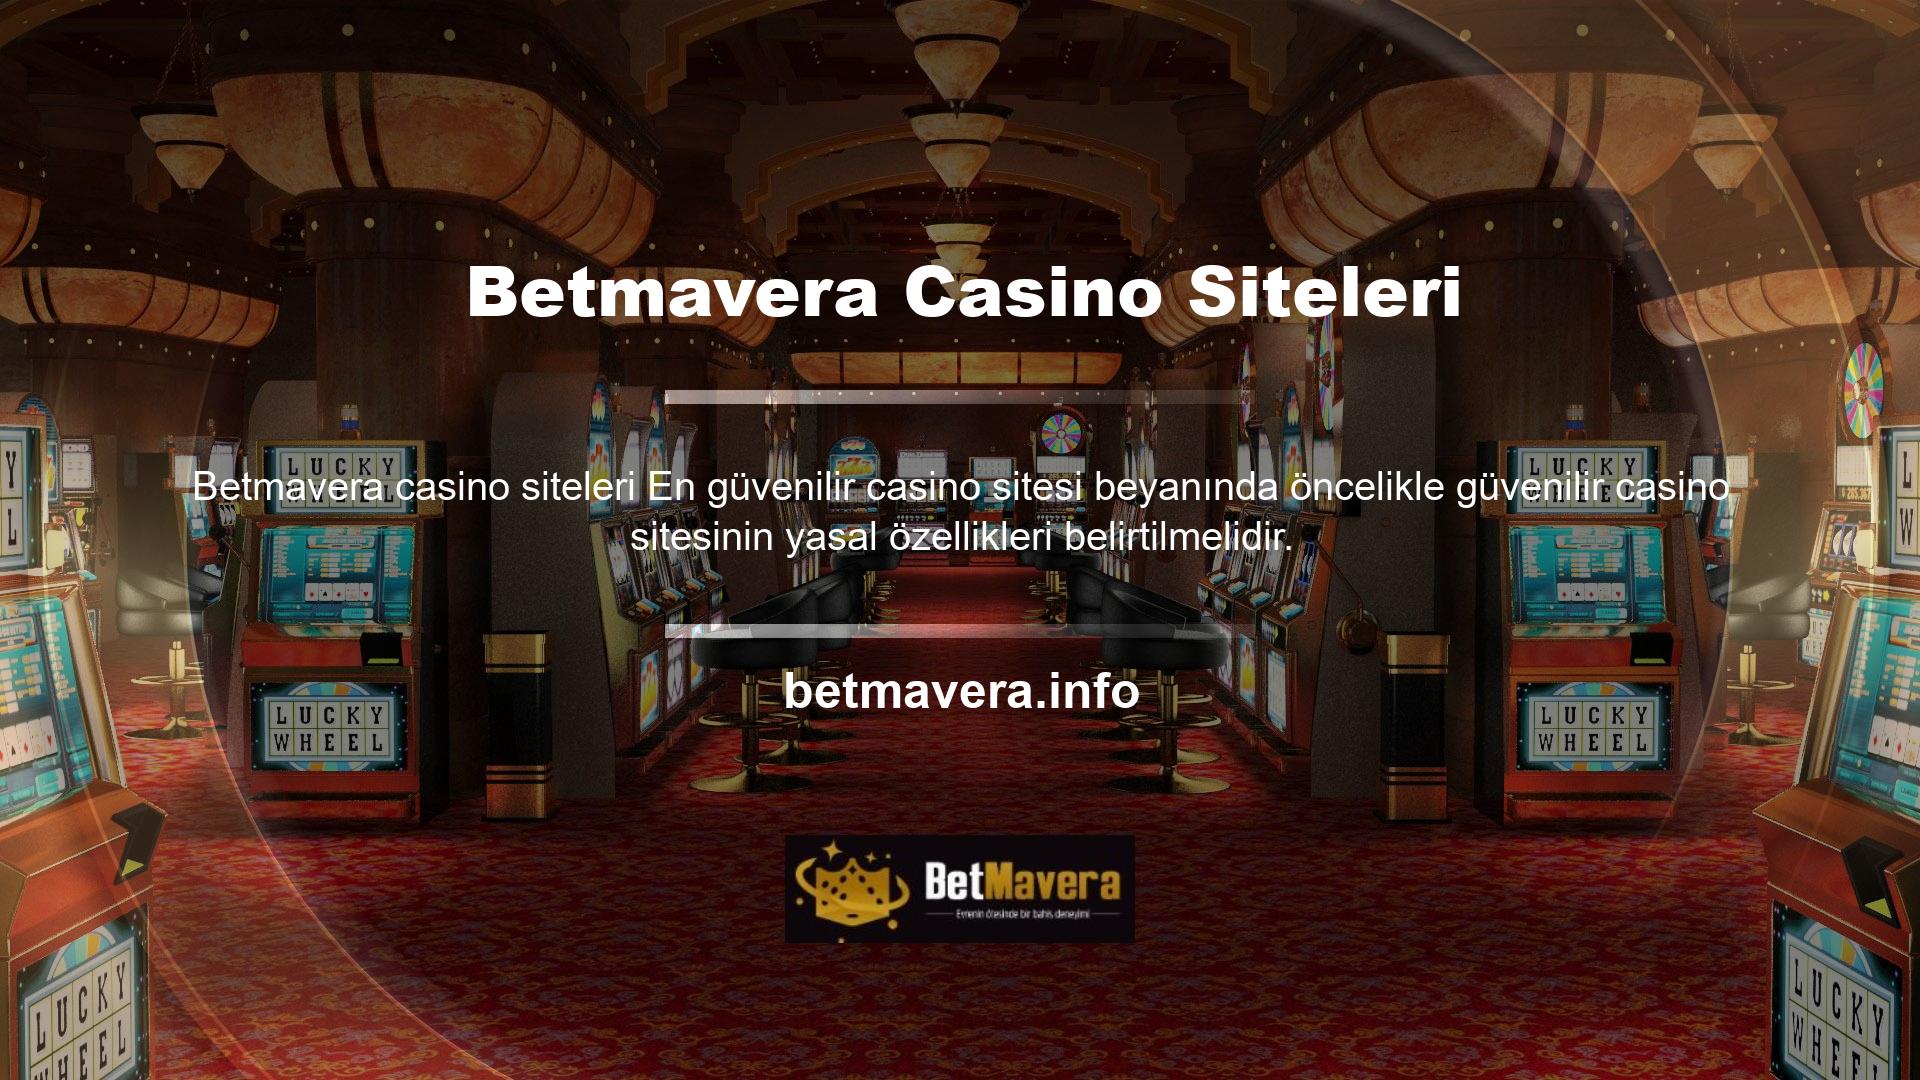 Betmavera Casino web sitesinde bir hesap açmak, para yatırmak ve oyun oynamak istiyorsanız, önce şirket bilgilerini doğrulayın